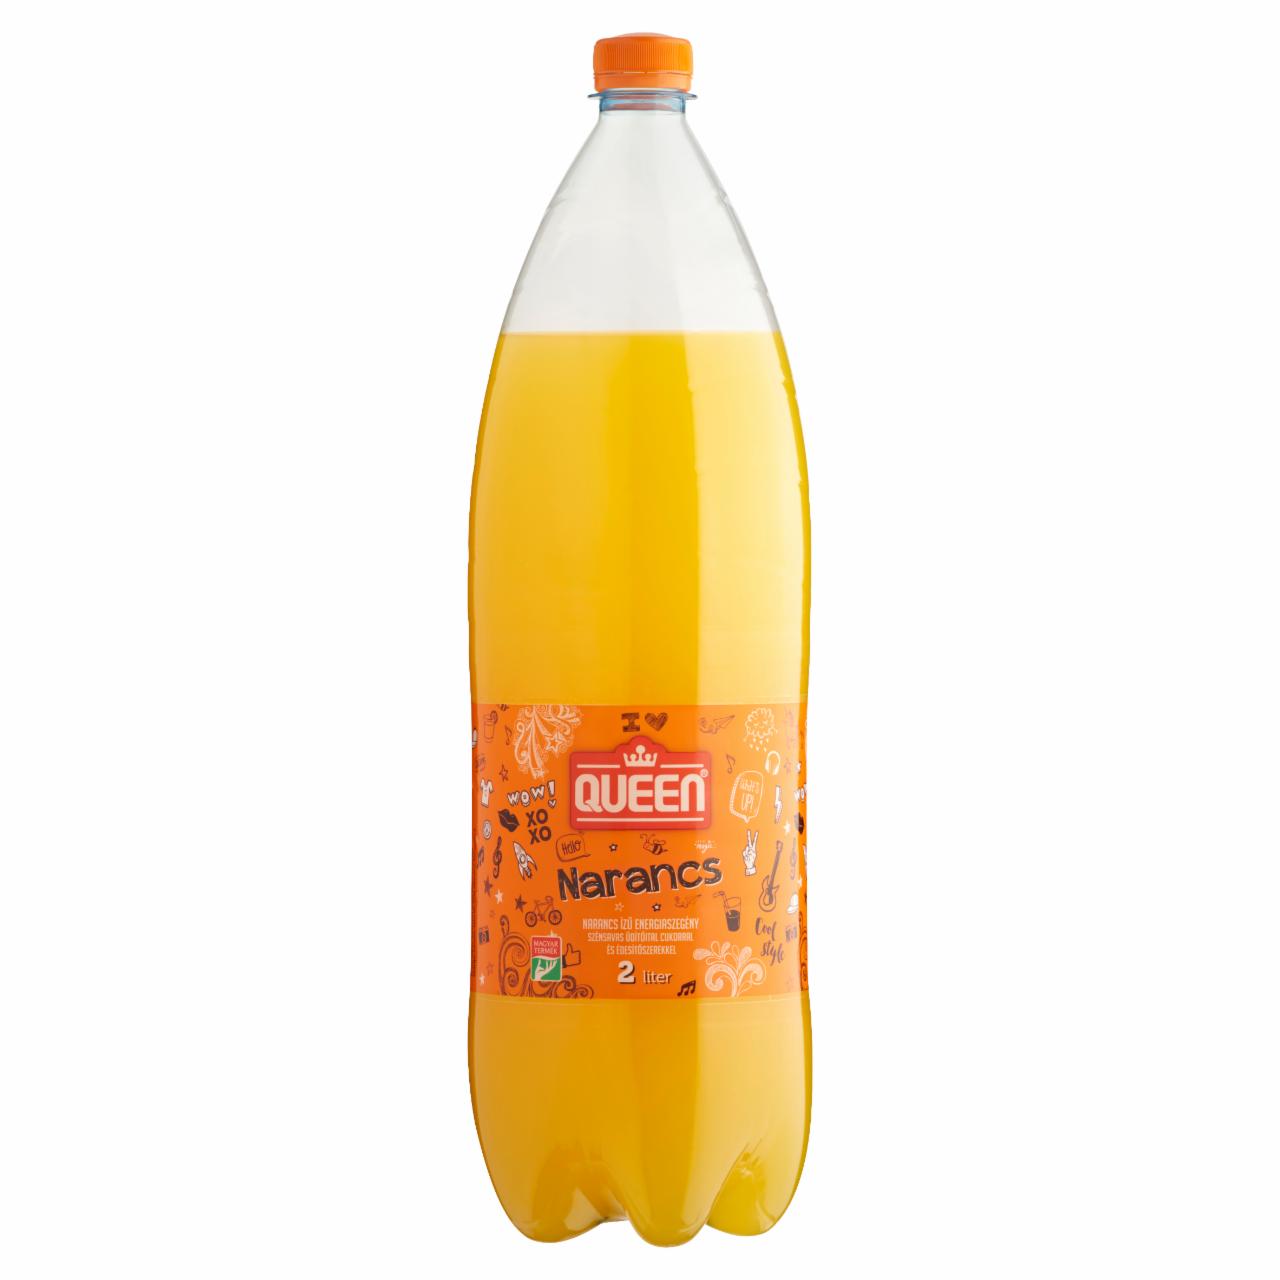 Képek - Queen narancs ízű energiaszegény szénsavas üdítőital cukorral és édesítőszerekkel 2 l